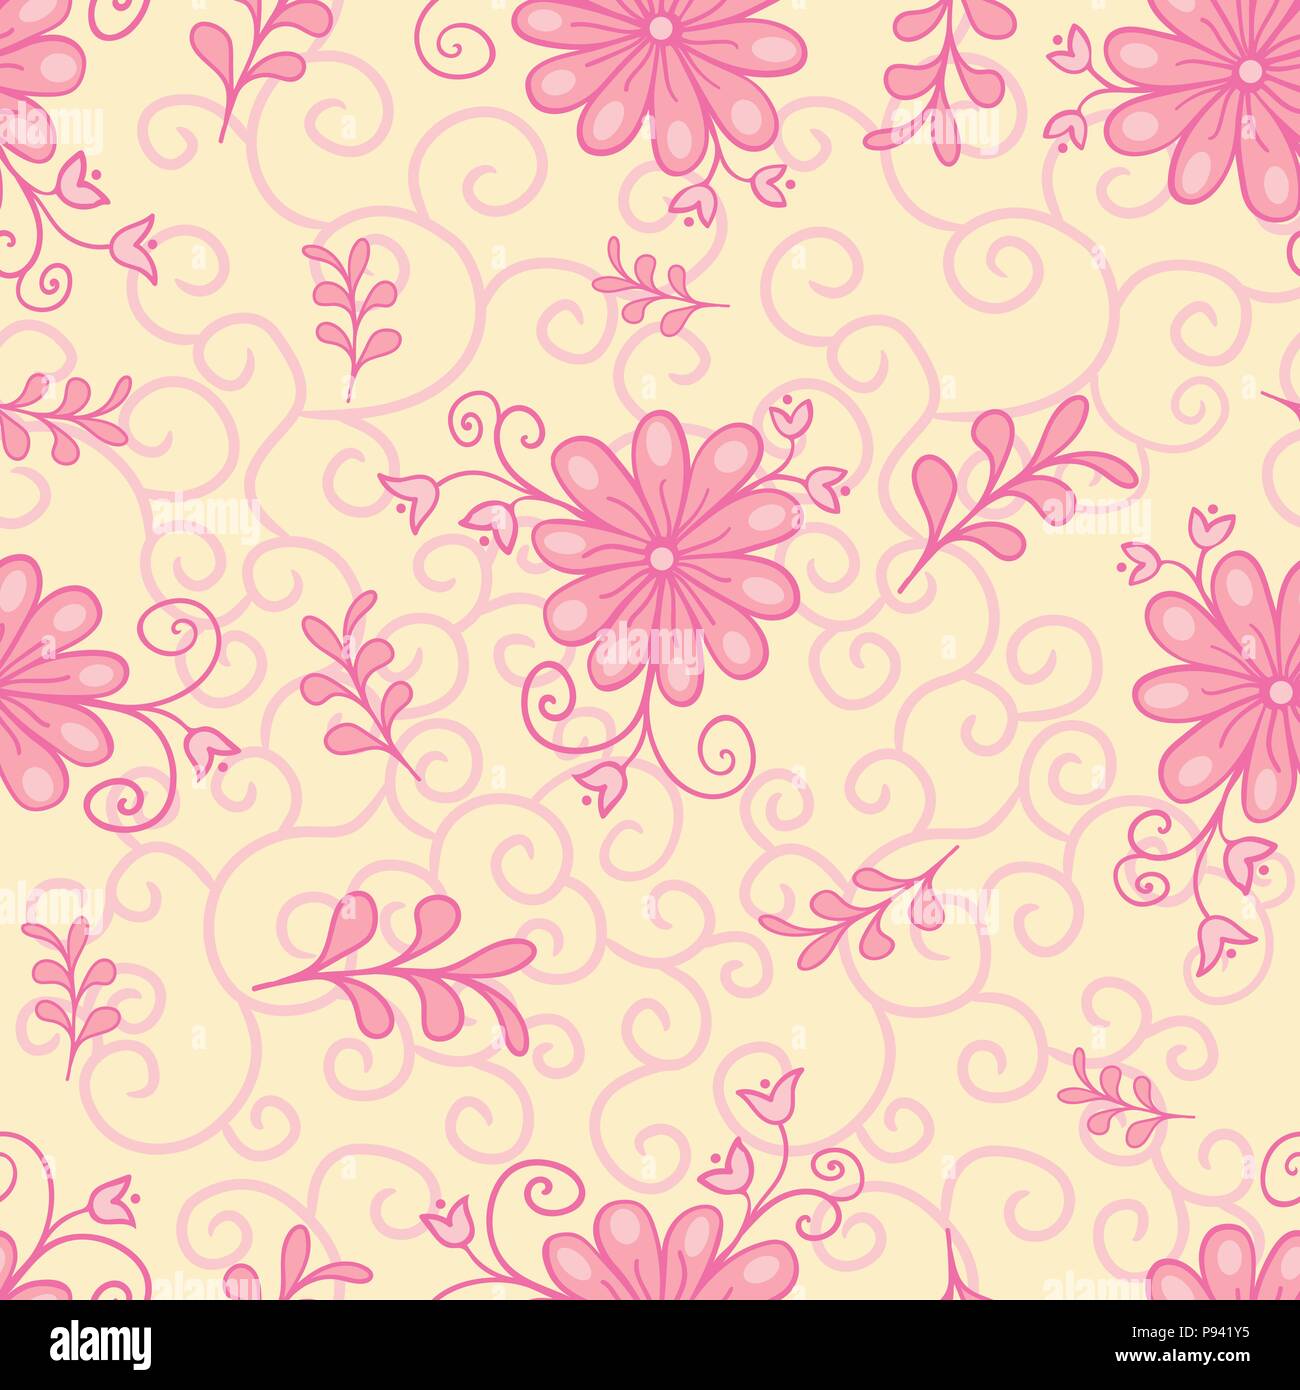 Vektor nahtlose, wiederholend luxuriöse Textur muster mit Blumen und Blätter. Einfarbig pink. Stock Vektor